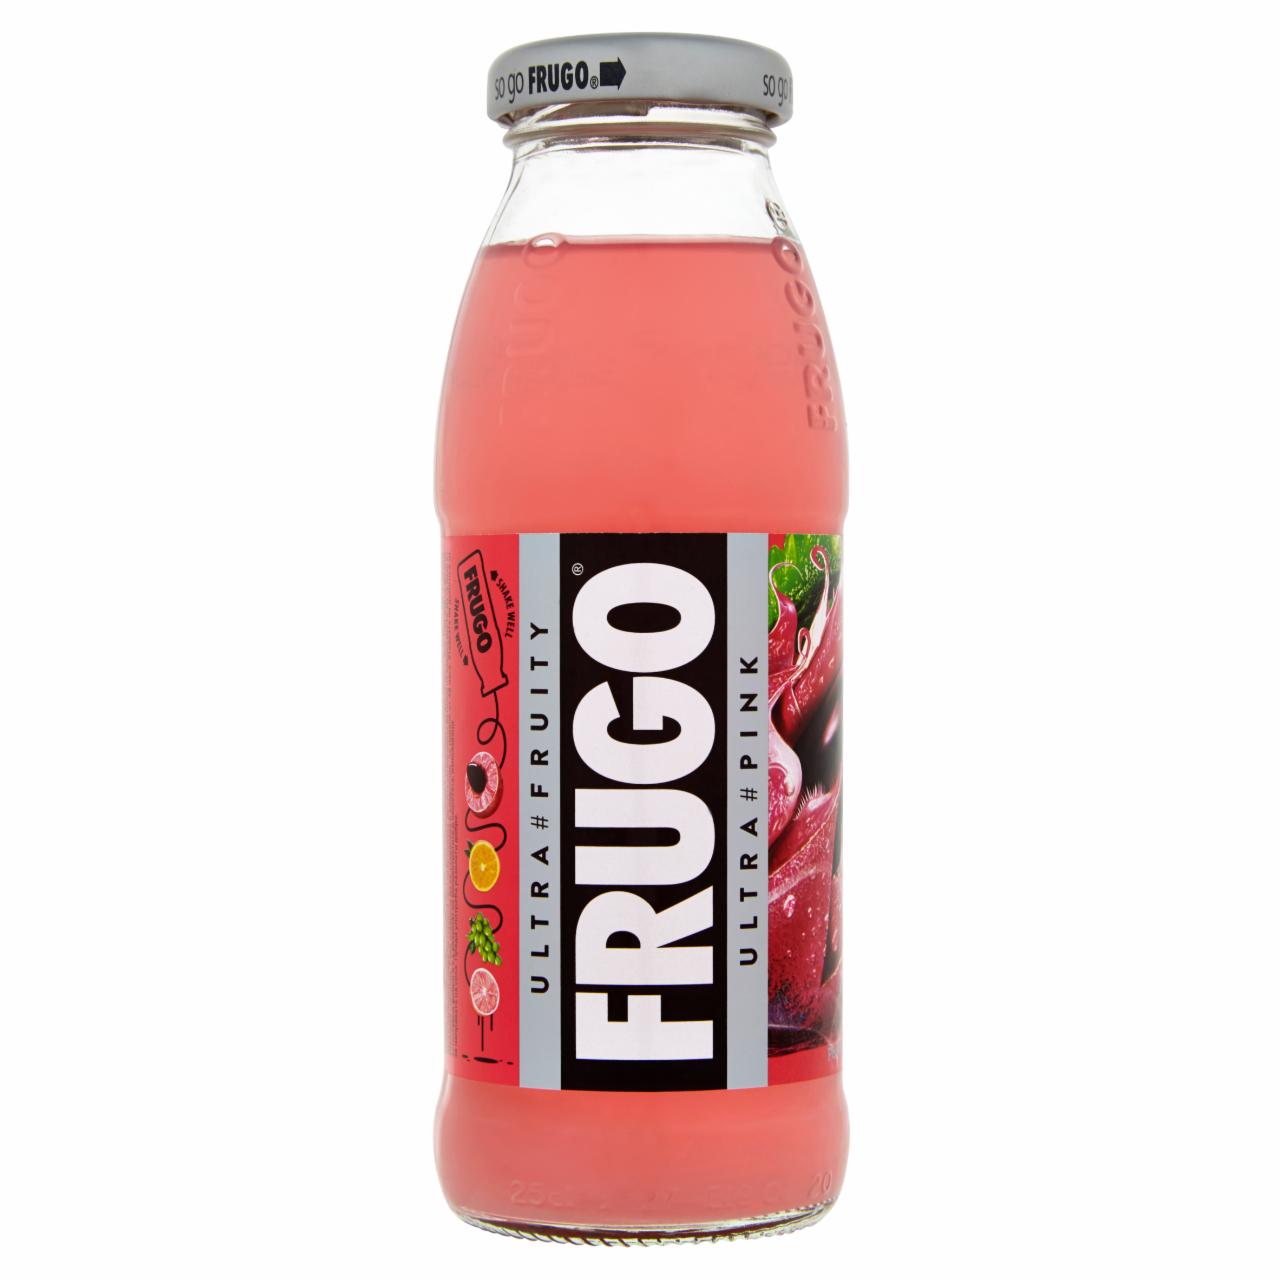 Képek - Frugo Pink szénsavmentes gyümölcsital 250 ml